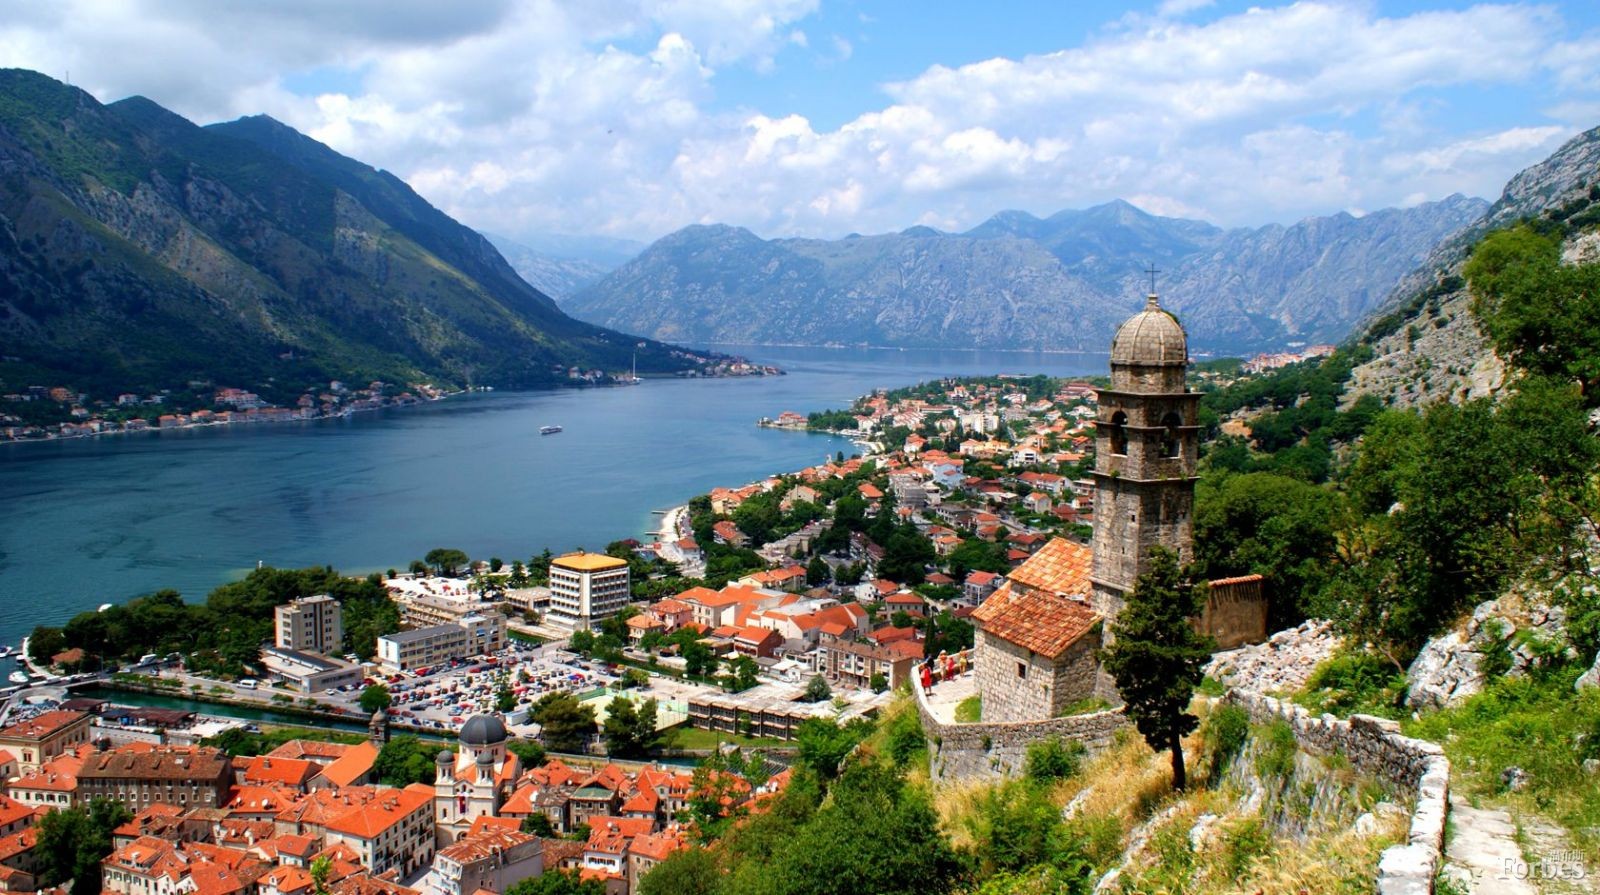 黑山正迅速成为欧洲风景最美丽和最奢华的旅行目的地之一。